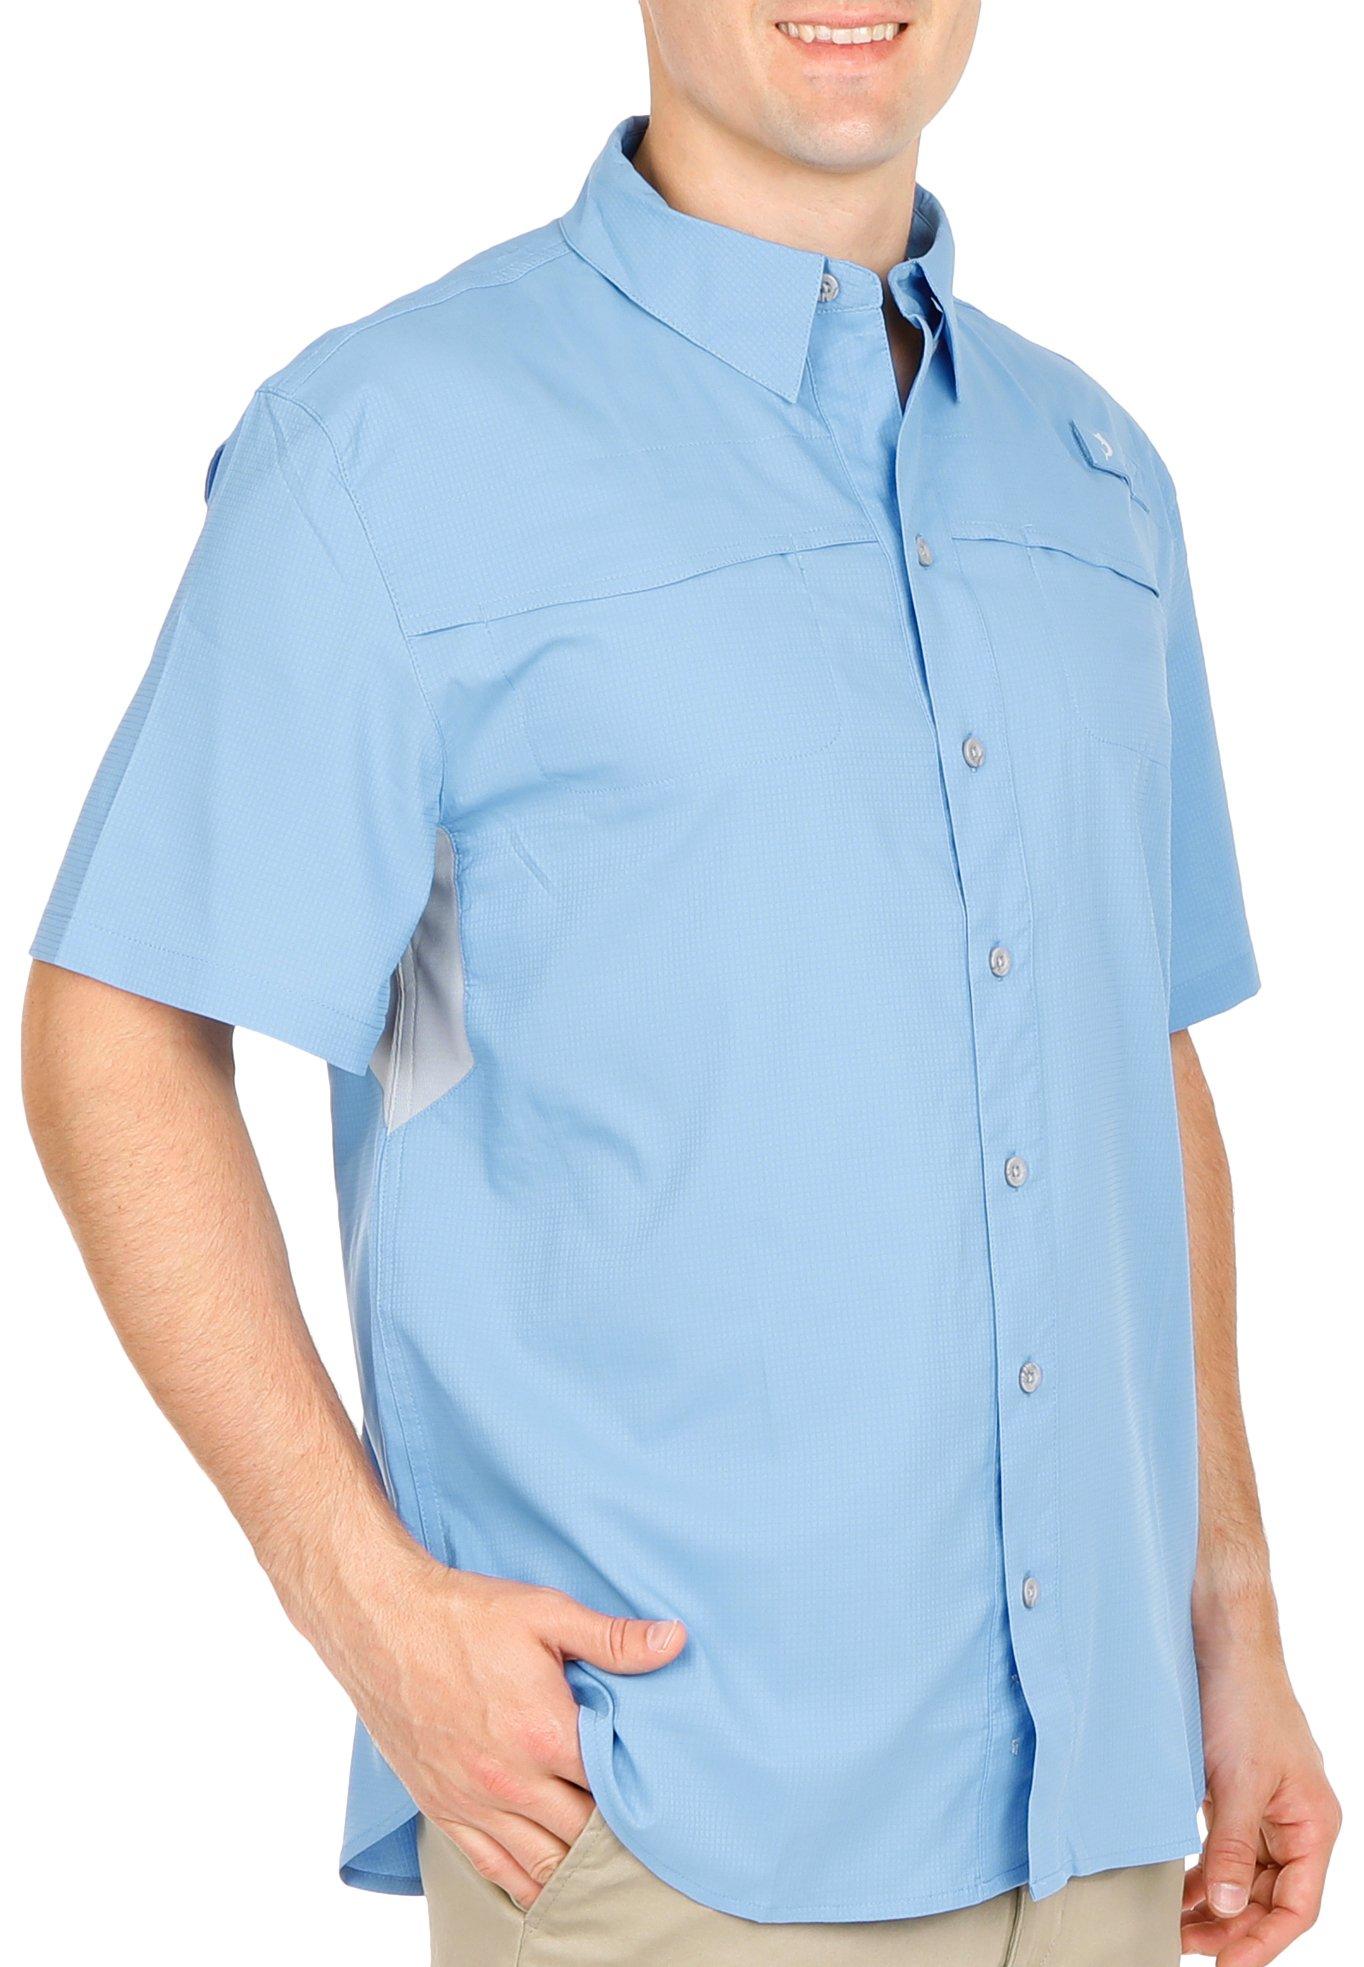 Reel Legends Mens Solid Mariner II Short Sleeve Shirt - Sky Blue - Large